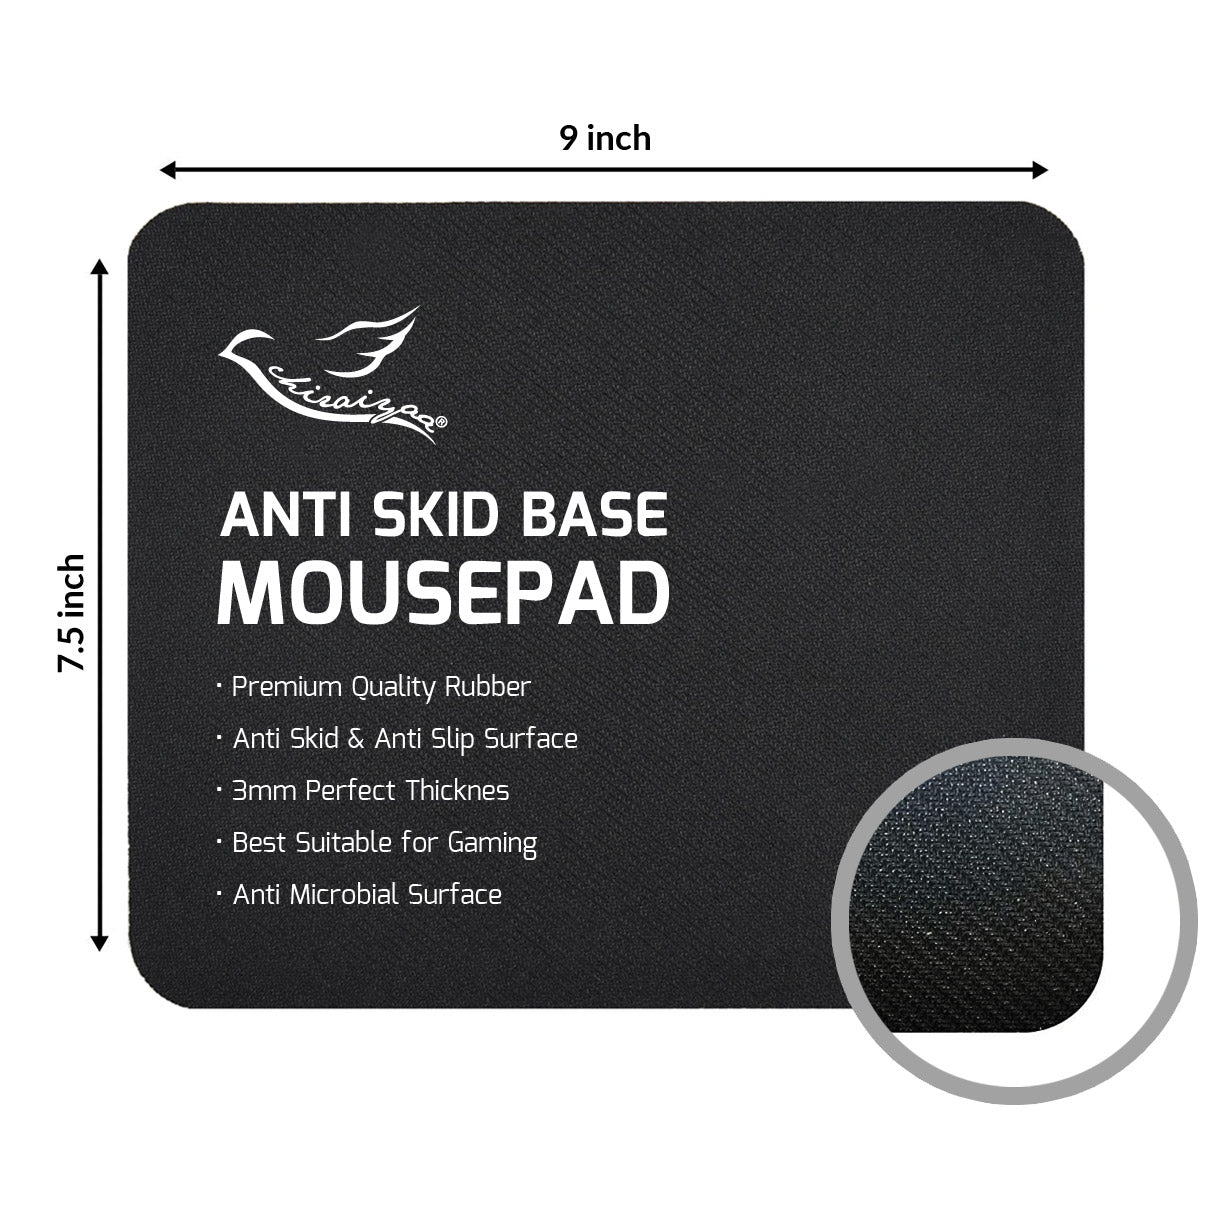 Work Sweat Achieve Quotes Designer Printed Premium Mouse pad (9 in x 7.5 in)